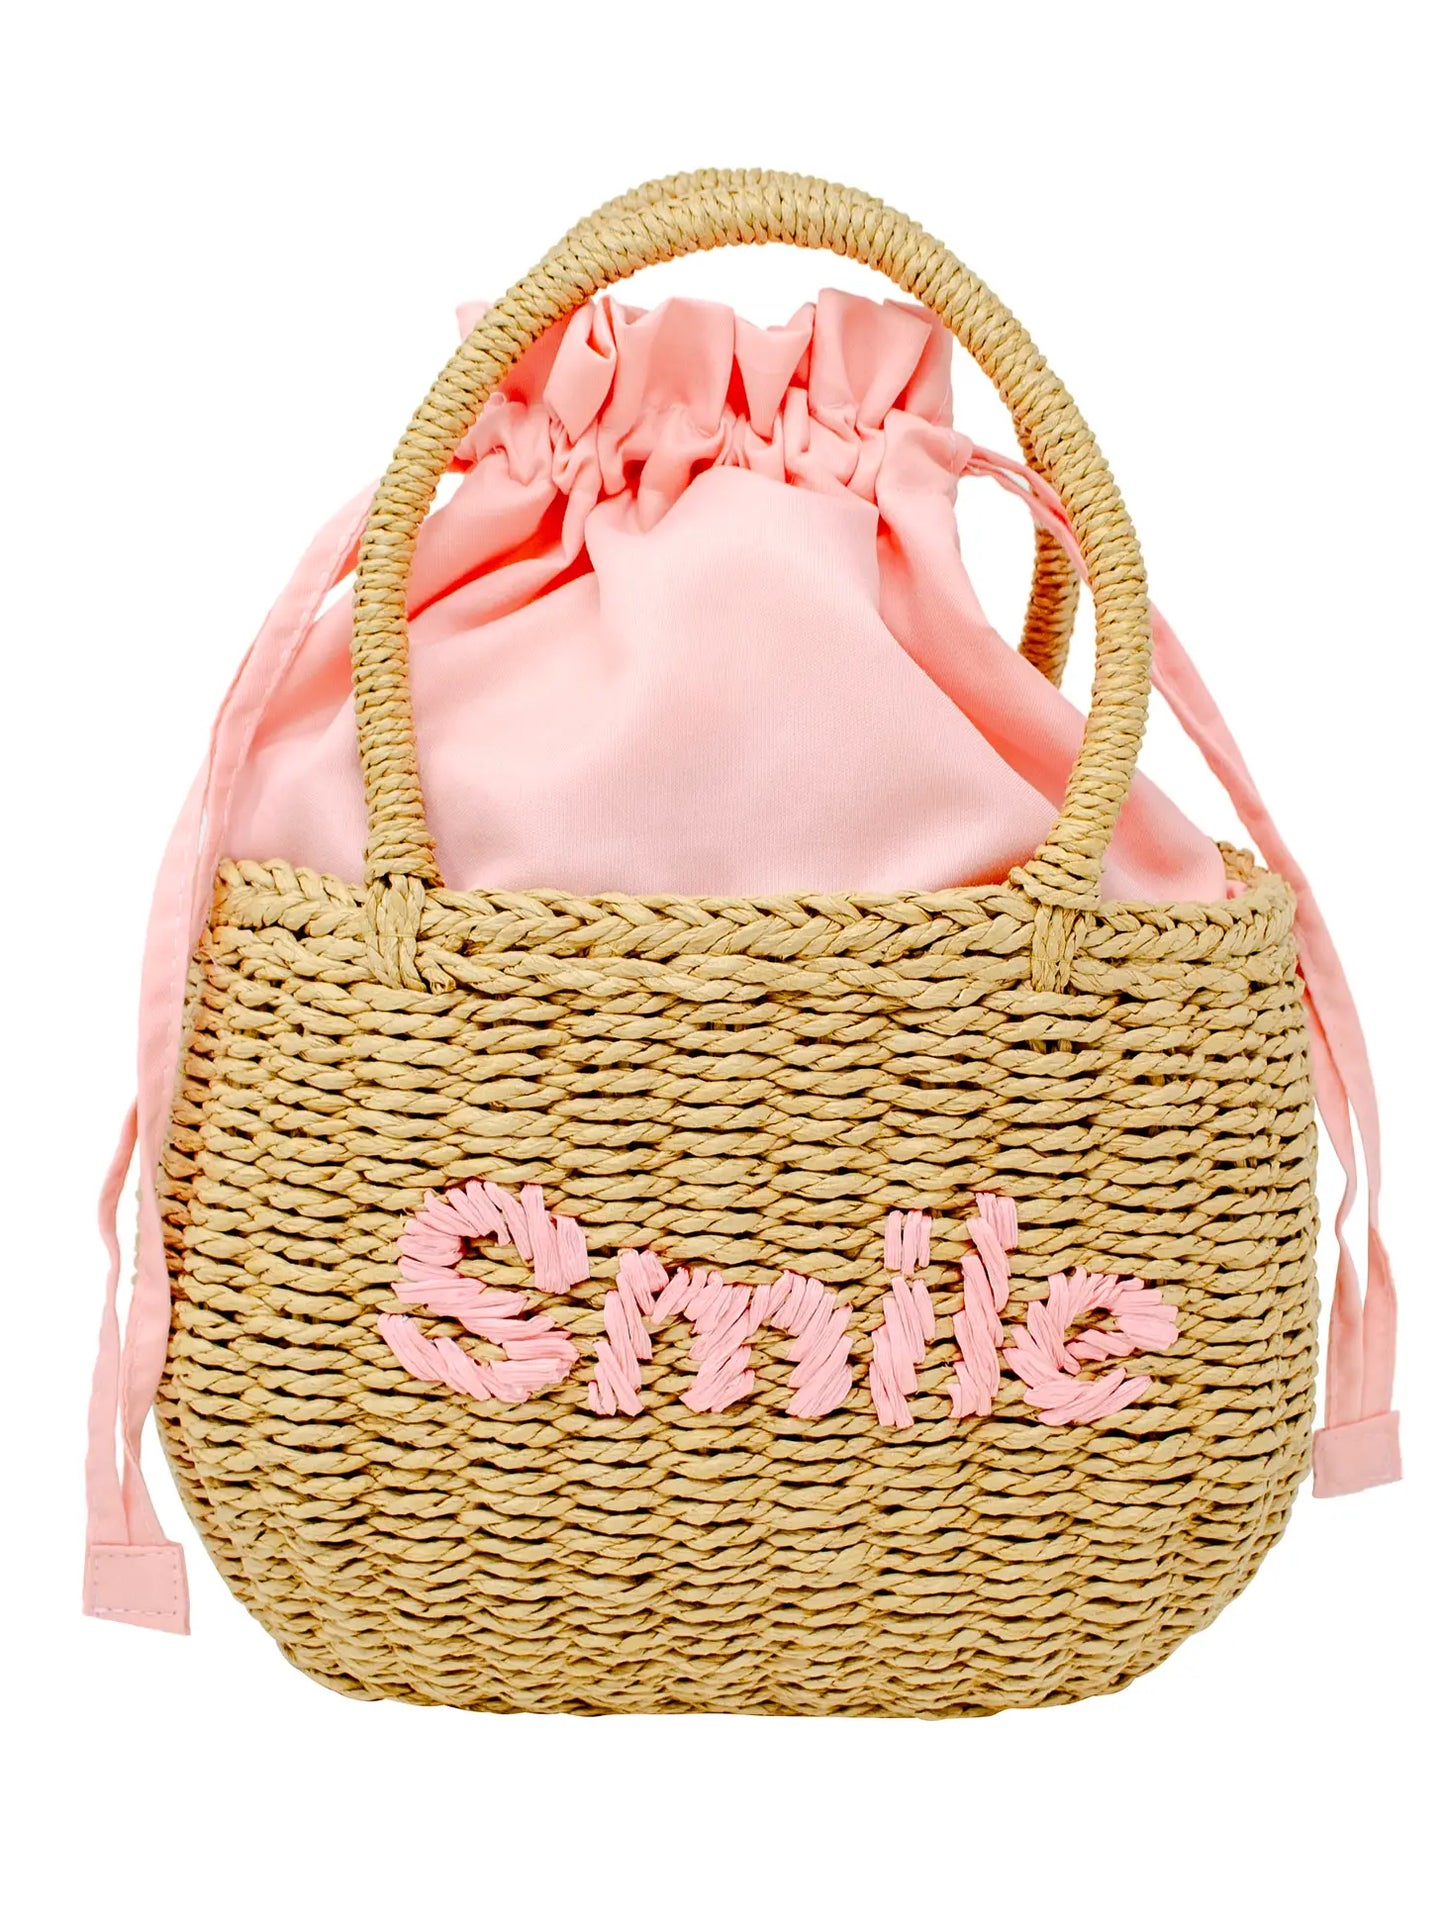 Wicker Basket Smile Bag - Pink